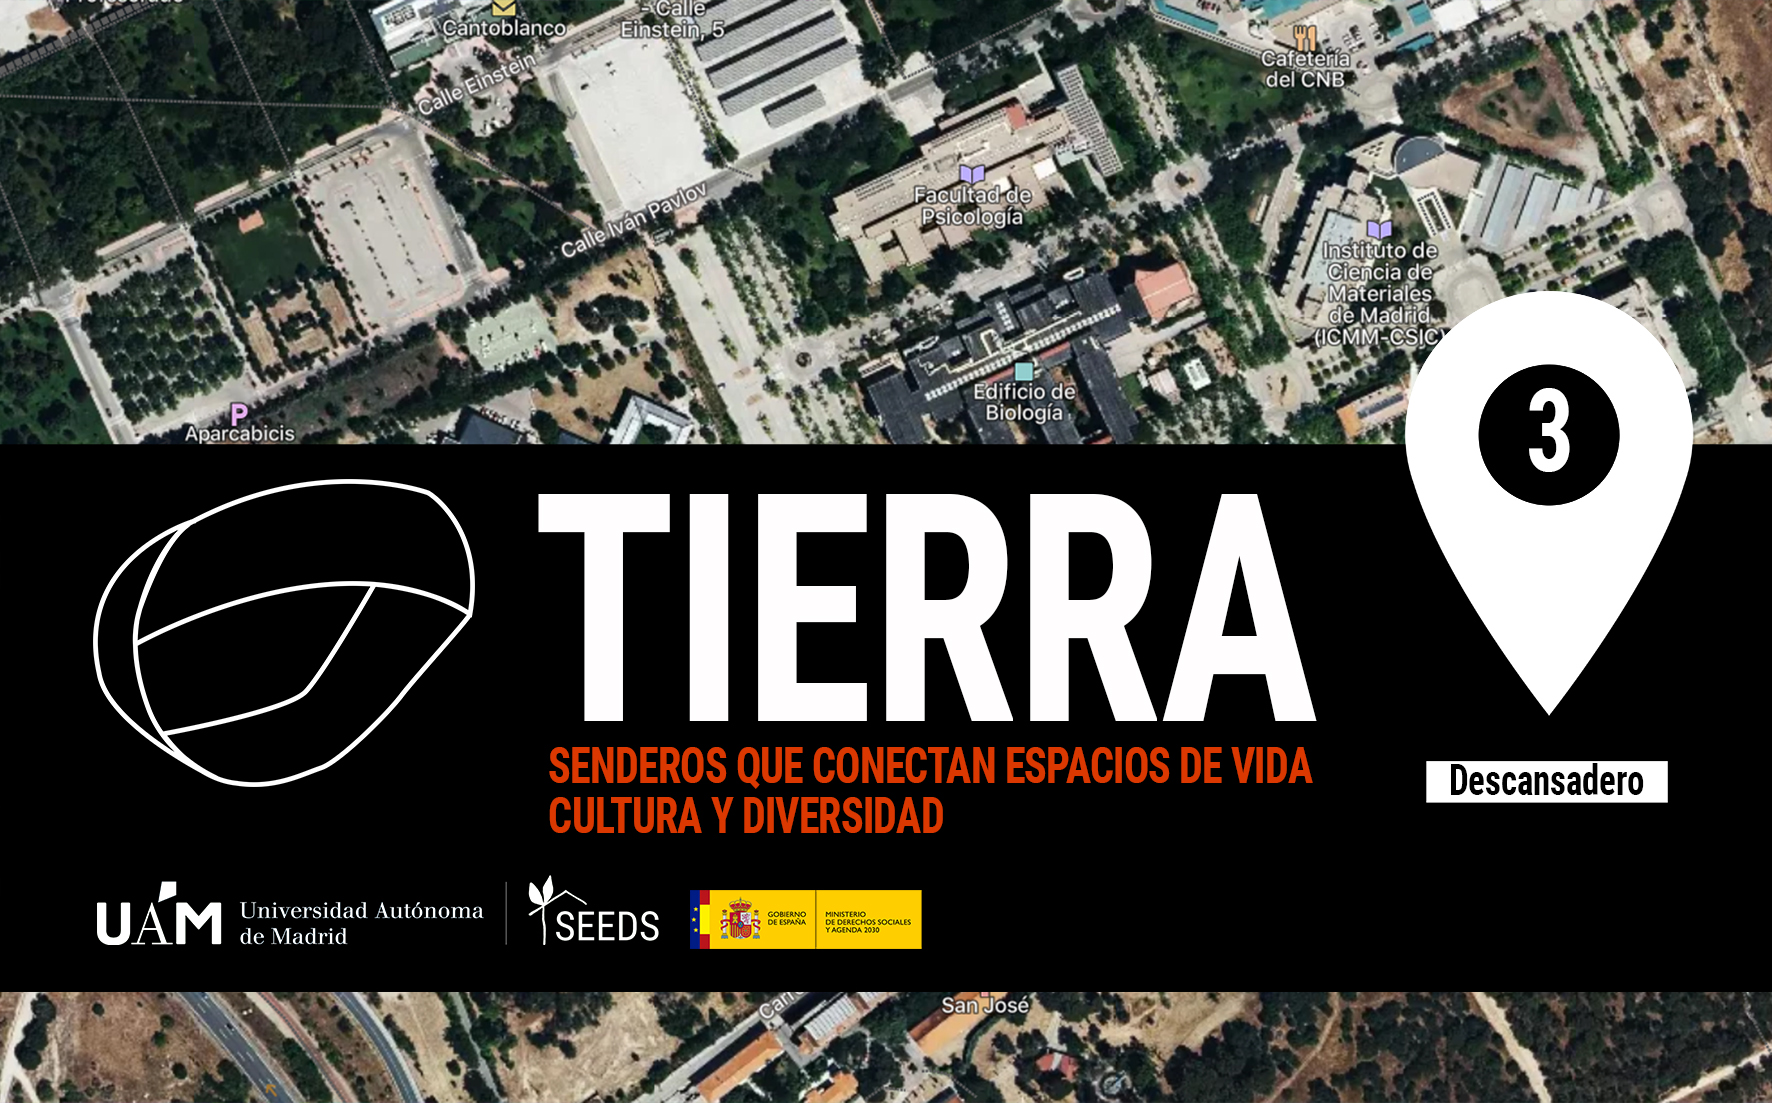 TIERRA: Descansadero 3_Senderos que conectan vida cultura y diversidad